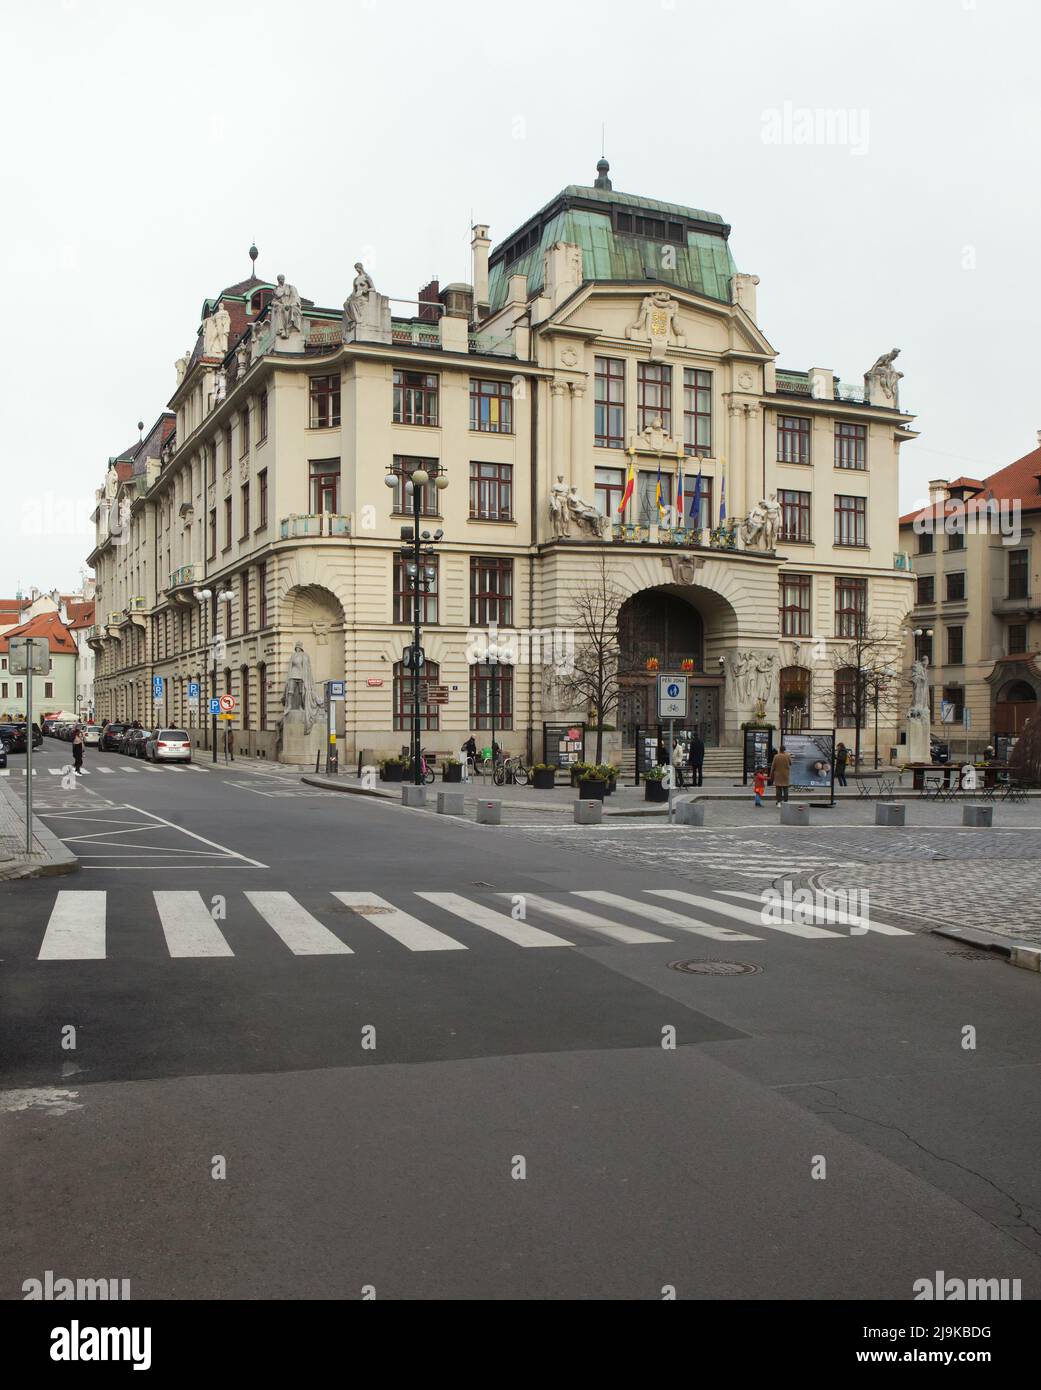 Nouvel hôtel de ville de Prague (Nová radnice) sur la place Mariánské à Staré Město (vieille ville) à Prague, République tchèque. Le bâtiment Art nouveau conçu par l'architecte tchèque Osvald Polívka a été construit entre 1908 et 1911. Banque D'Images